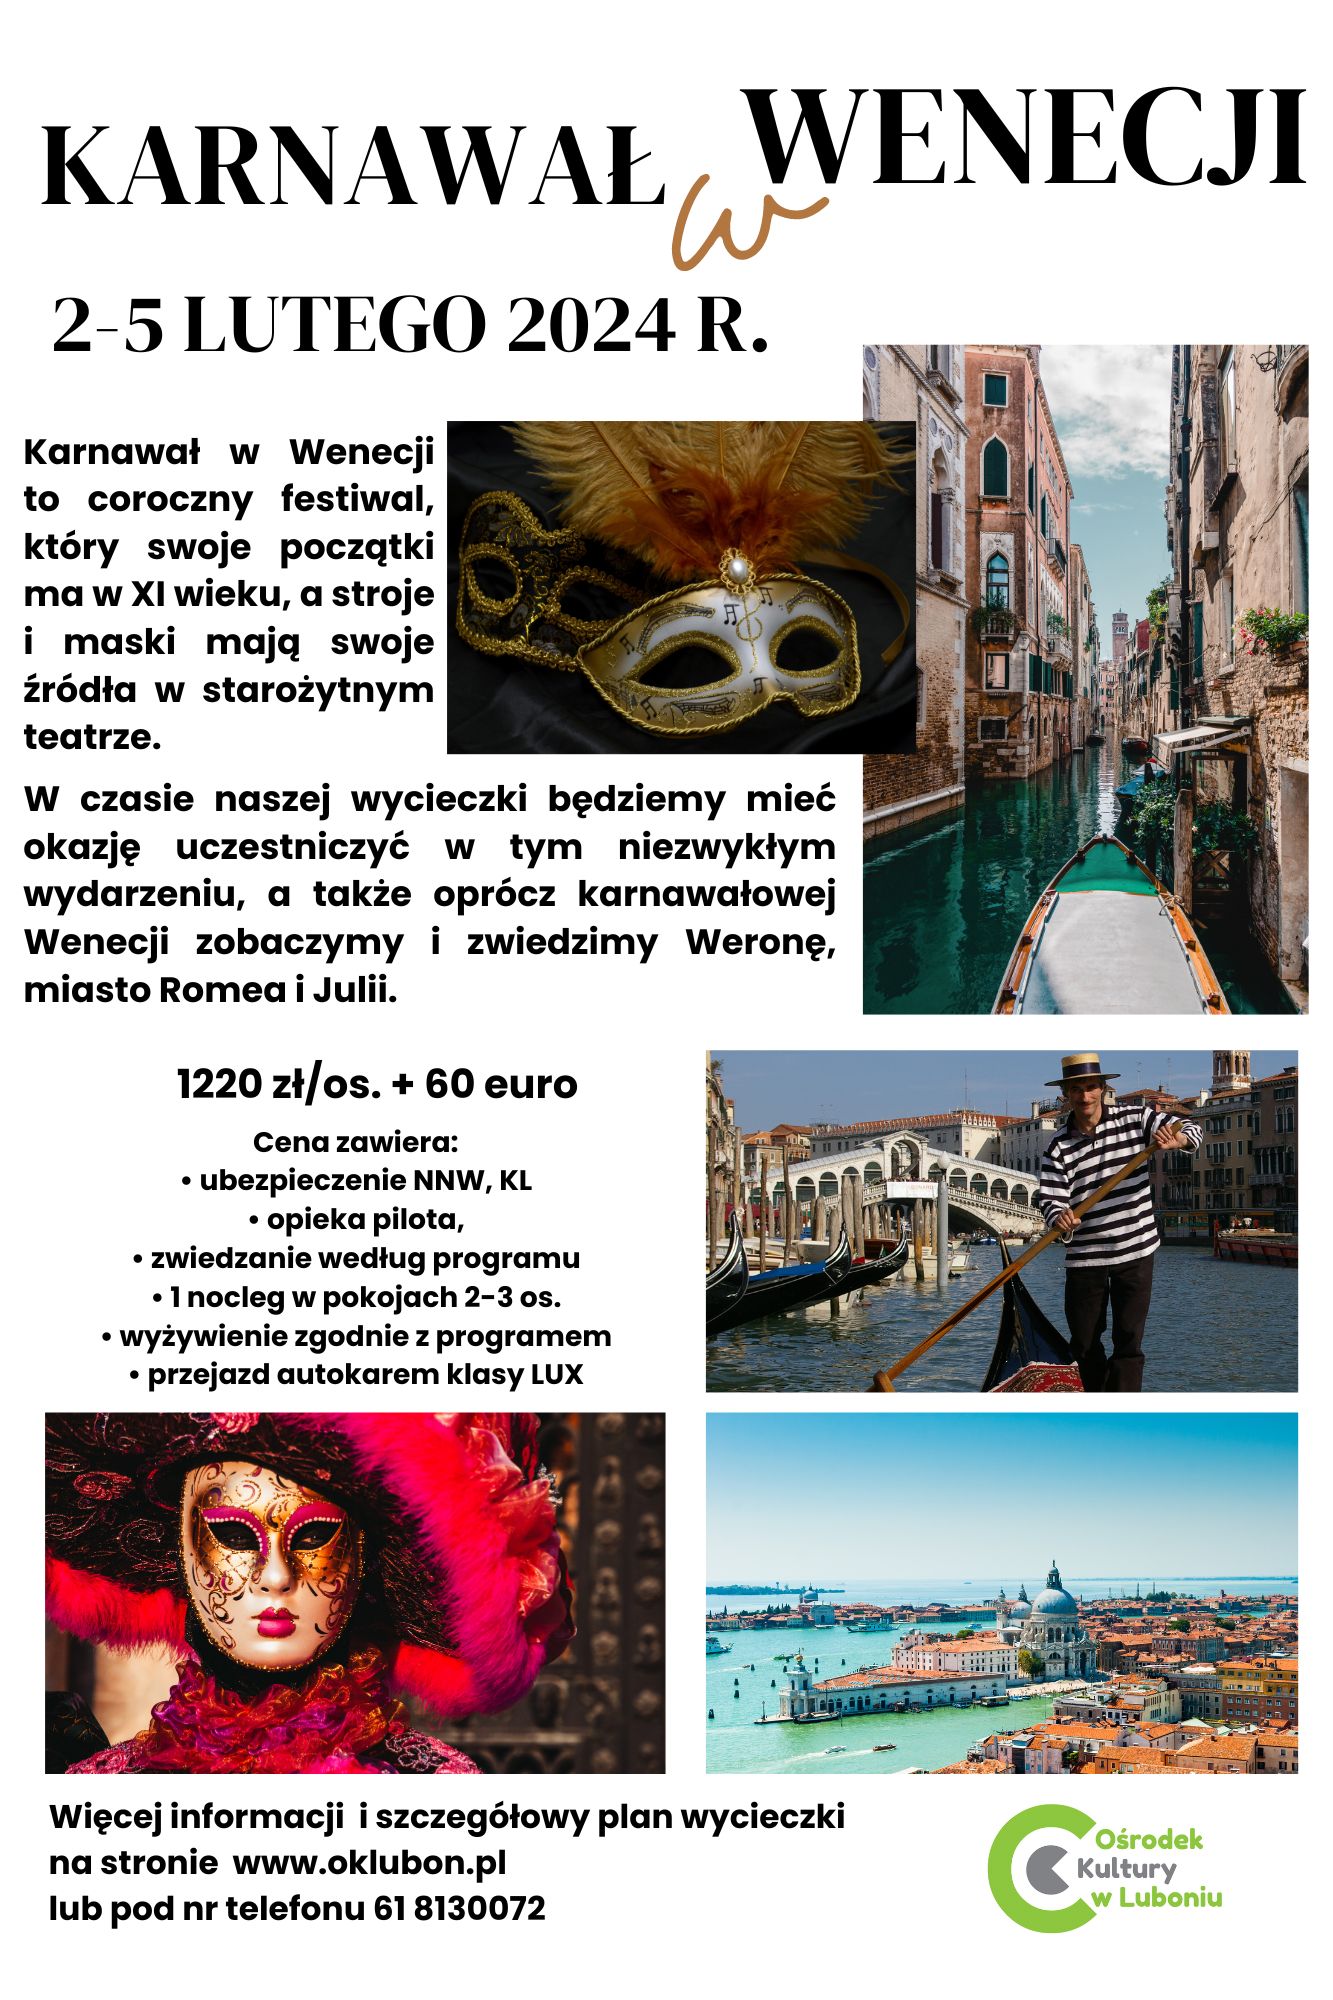 Plakat informujący o wycieczce do Wenecji - informacje powtórzone w artykule